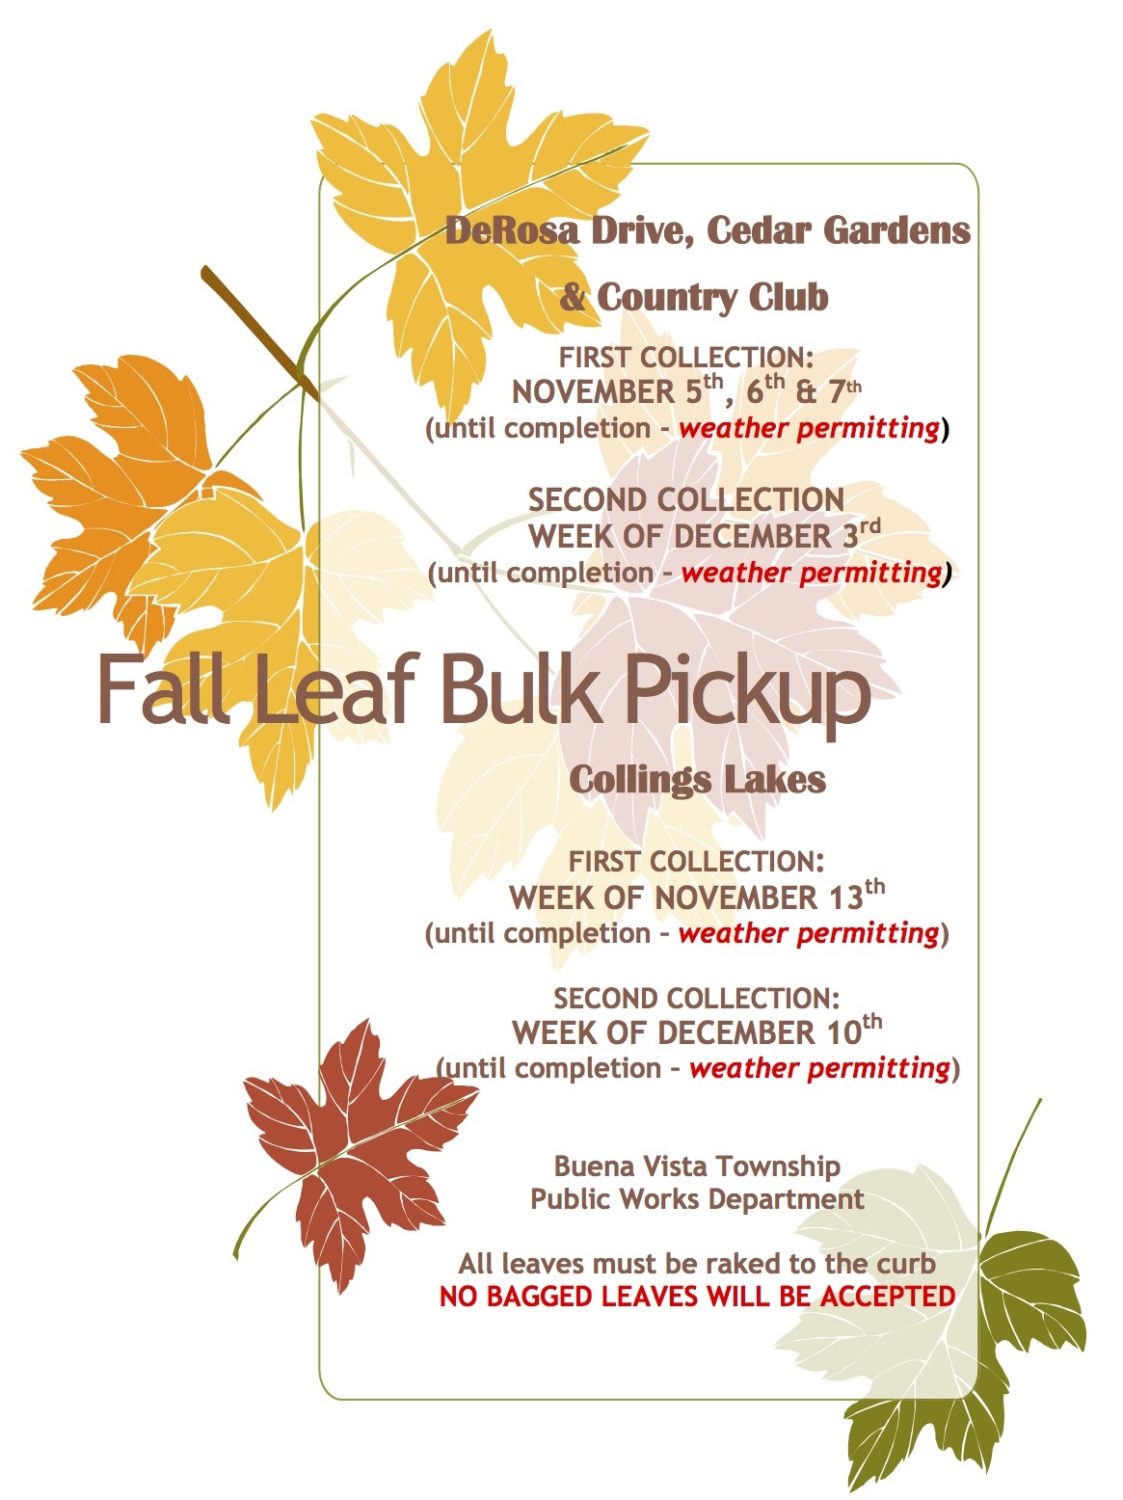 Buena Vista Township Fall Leaf Bulk Pickup Schedule Released